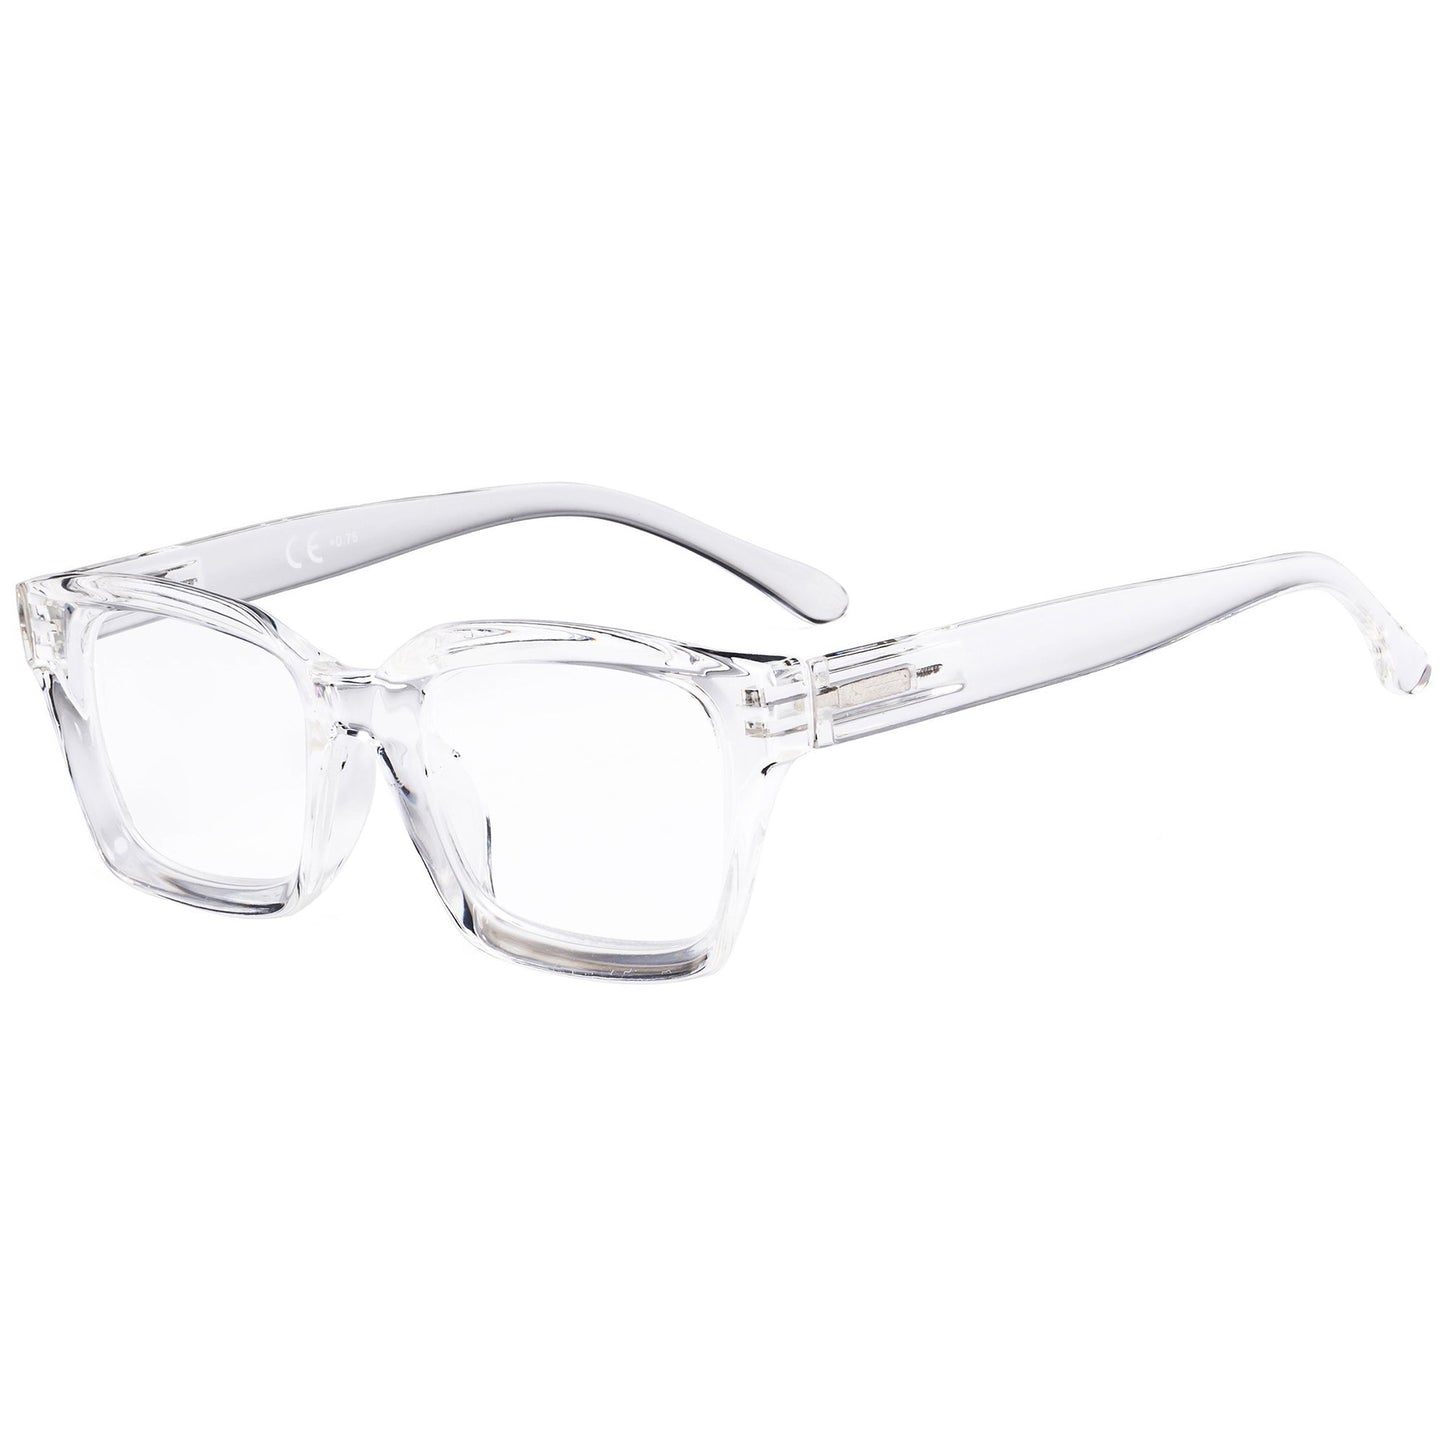 Oversized Reading Glasses Square Readers for Women R9106-1